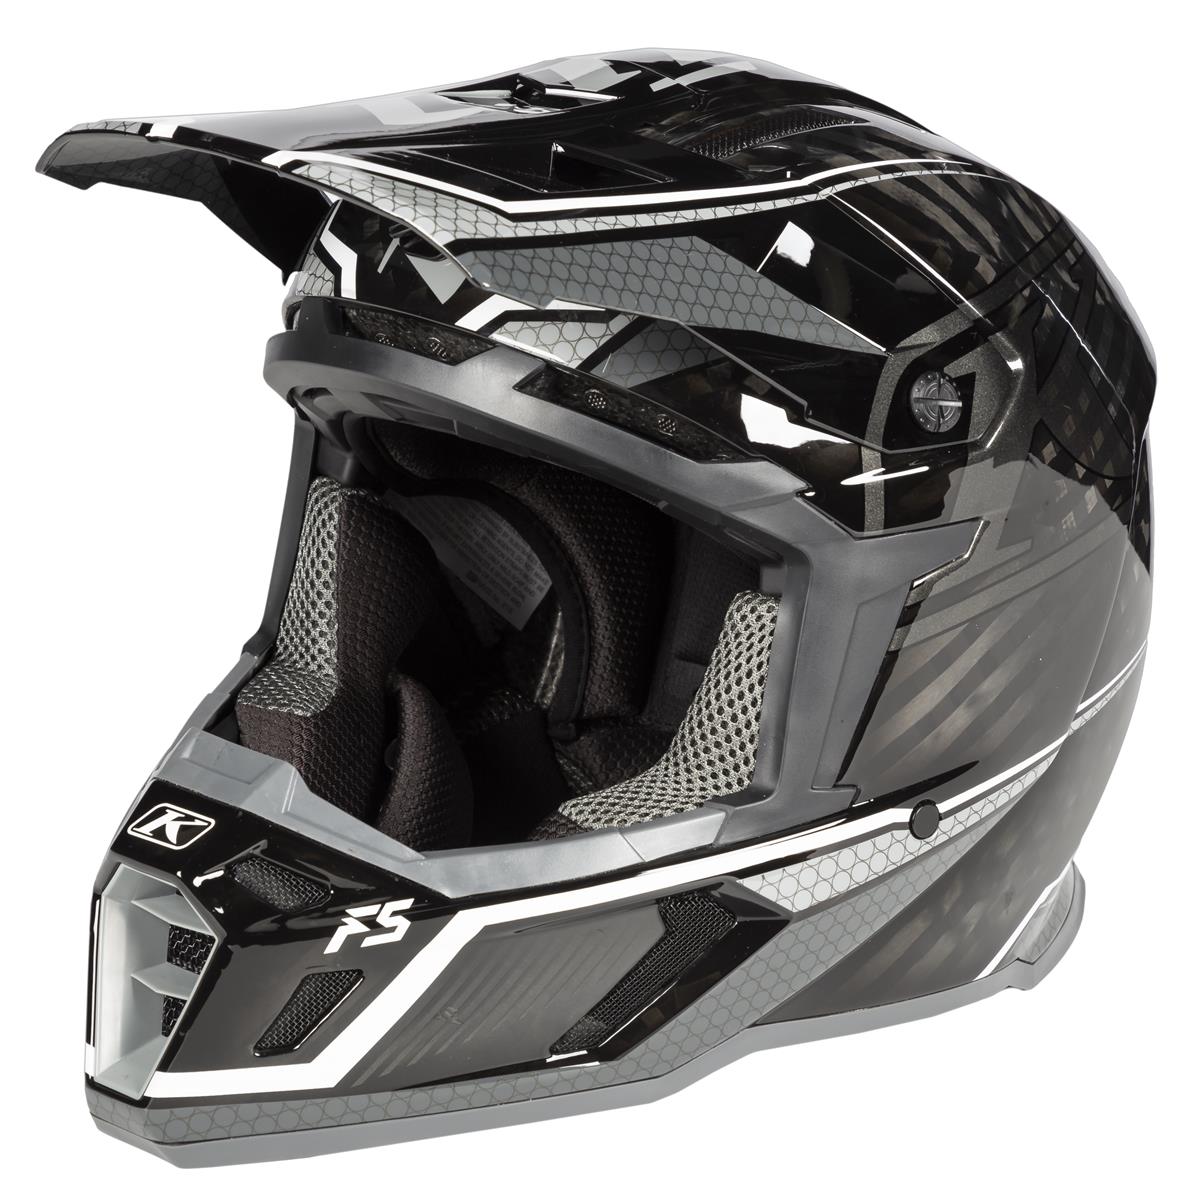 Klim Helmet F5 Koroyd Koretek Grey - Black/Grey